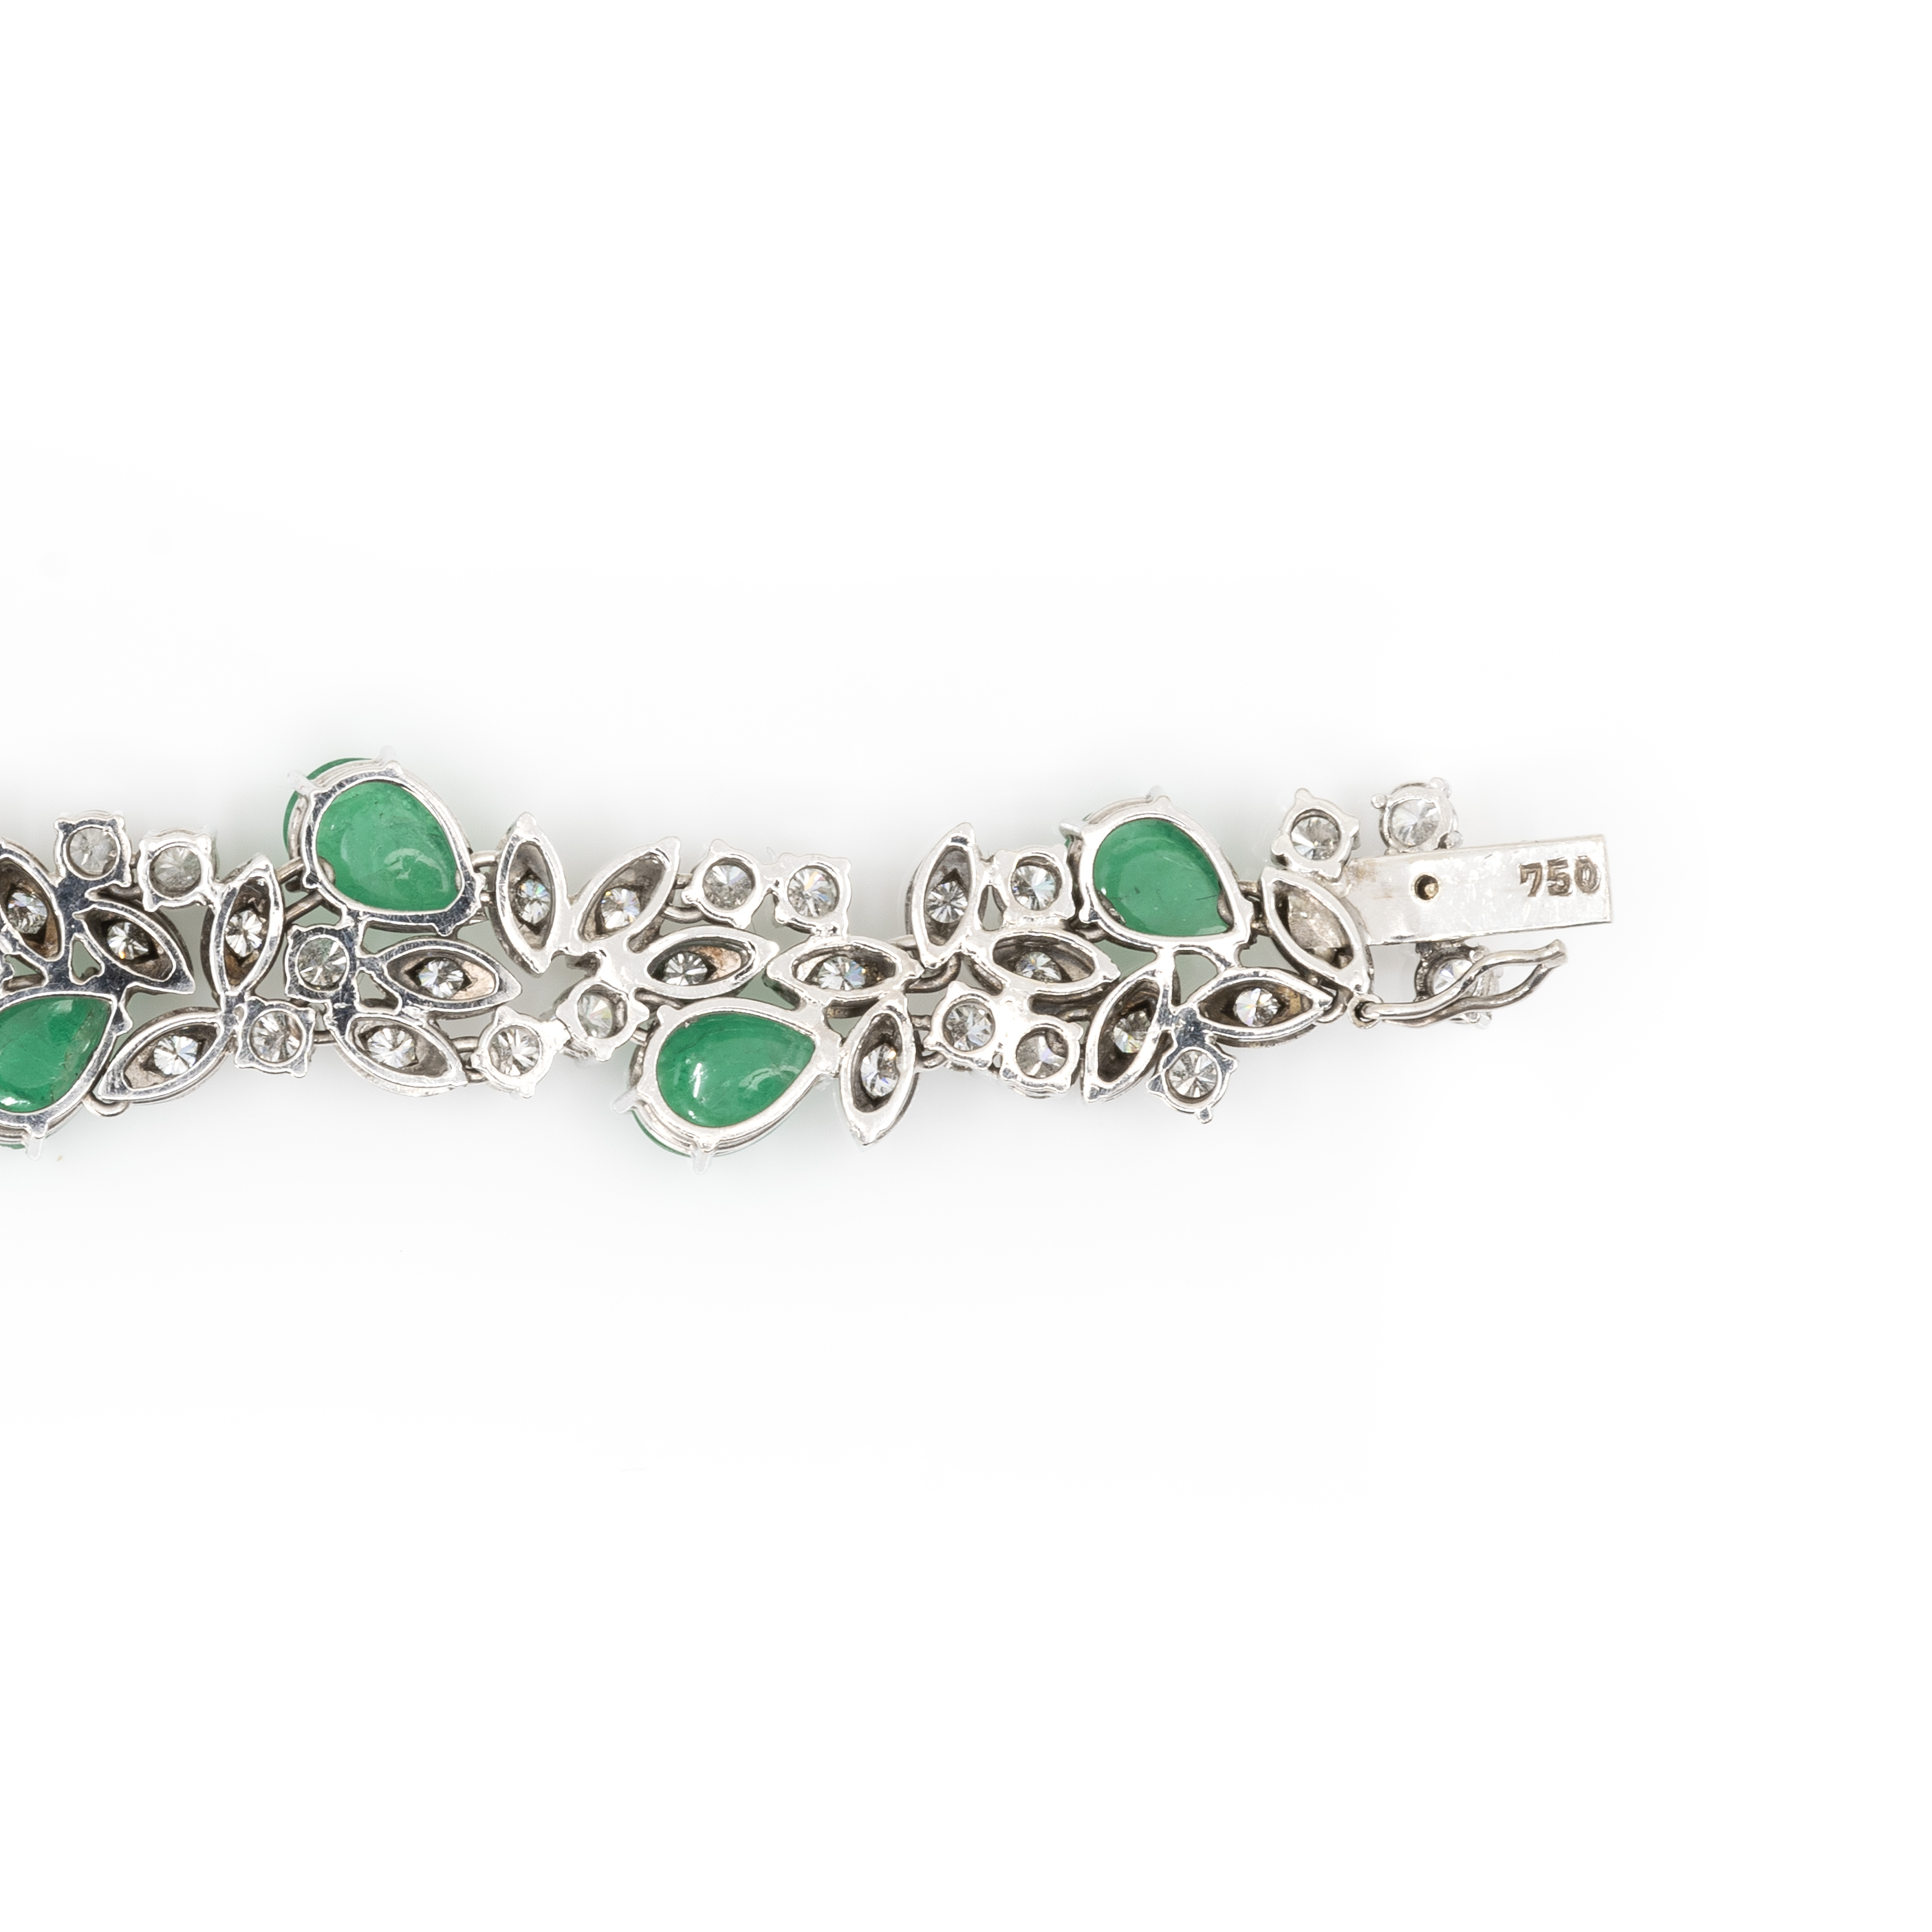 Collier und Armband mit Smaragd-Diamantbesatz - Image 8 of 8